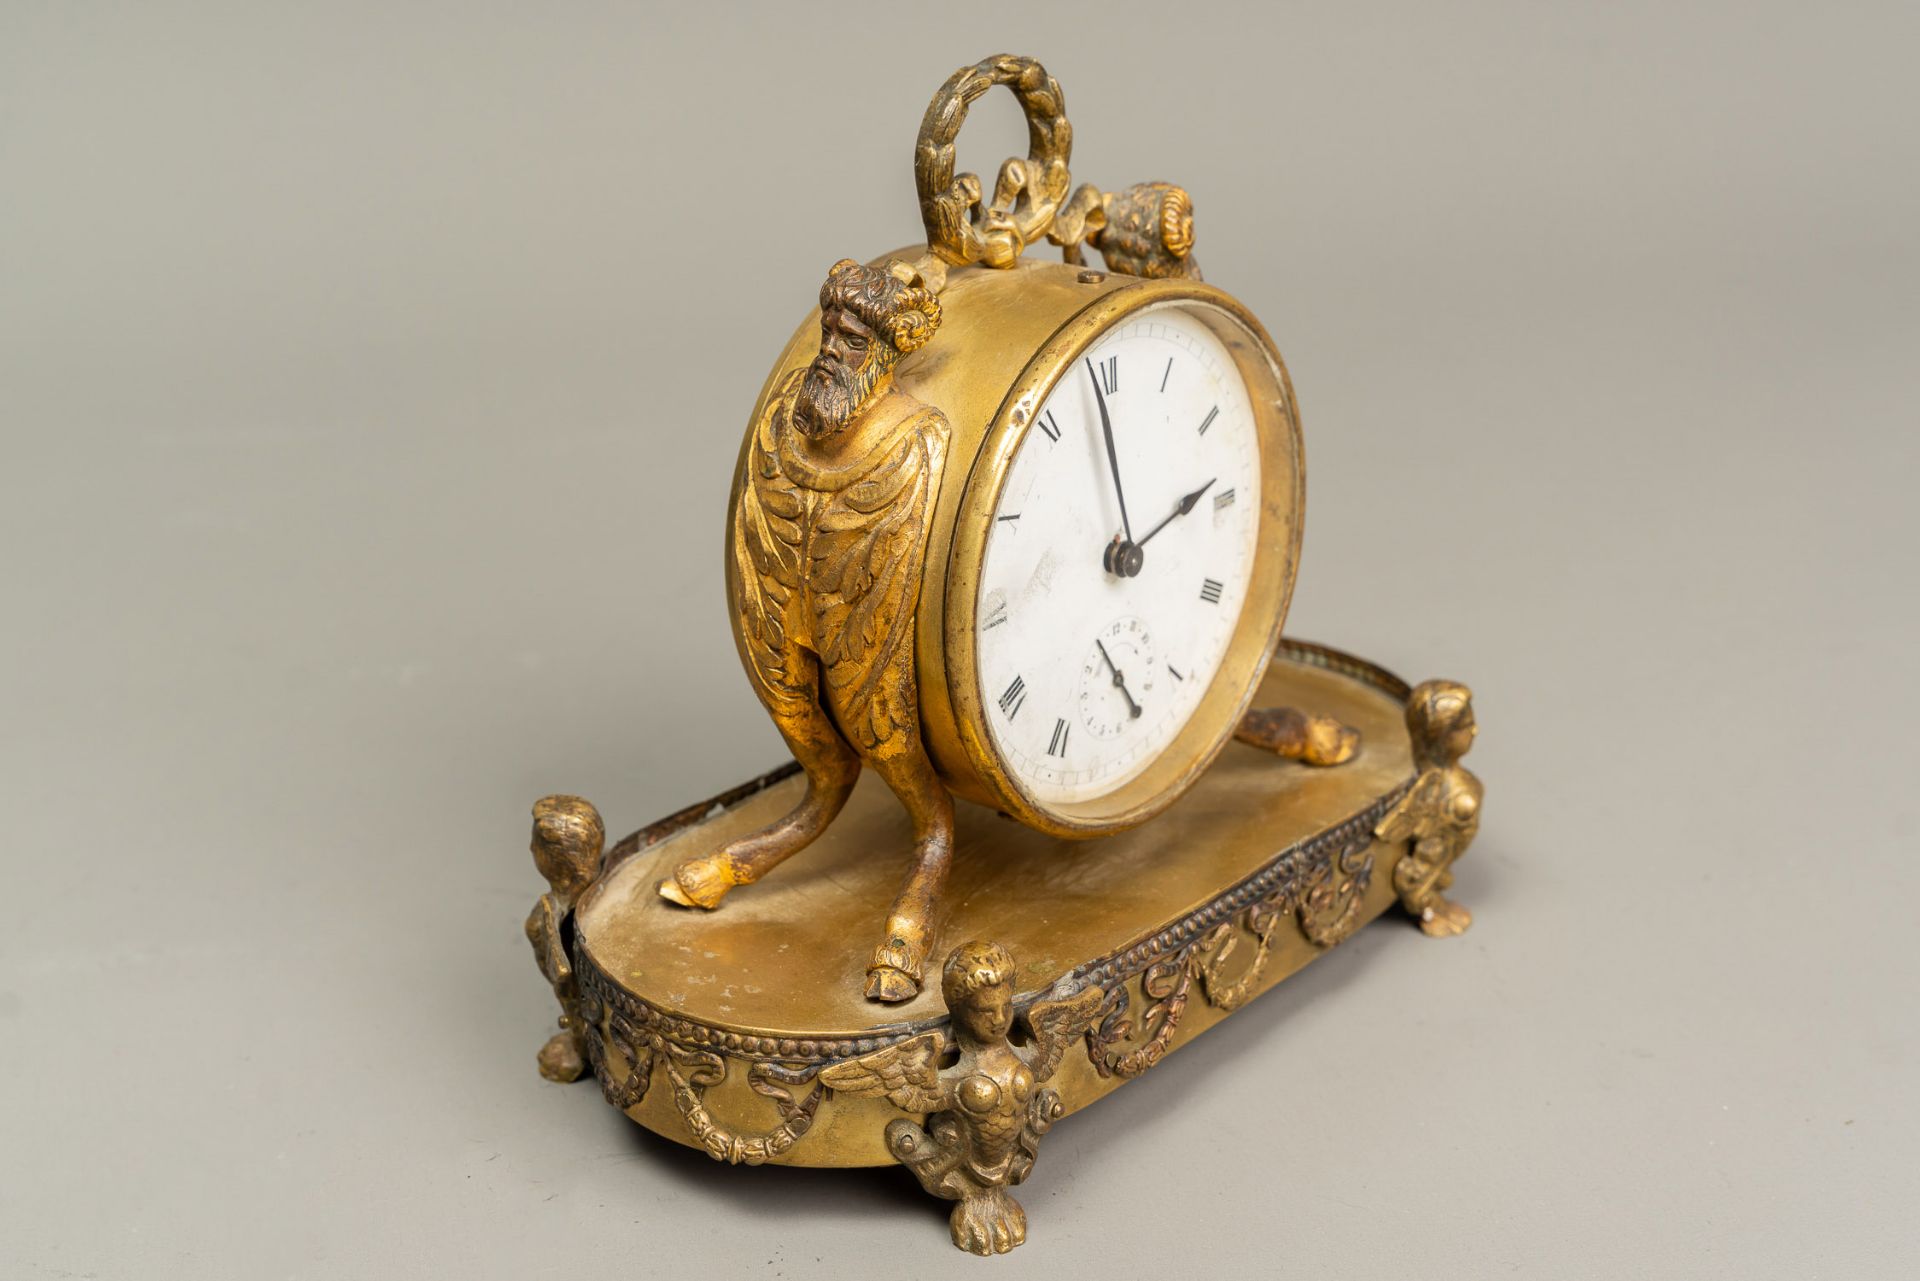 Classical Alarm Clock - Image 2 of 3